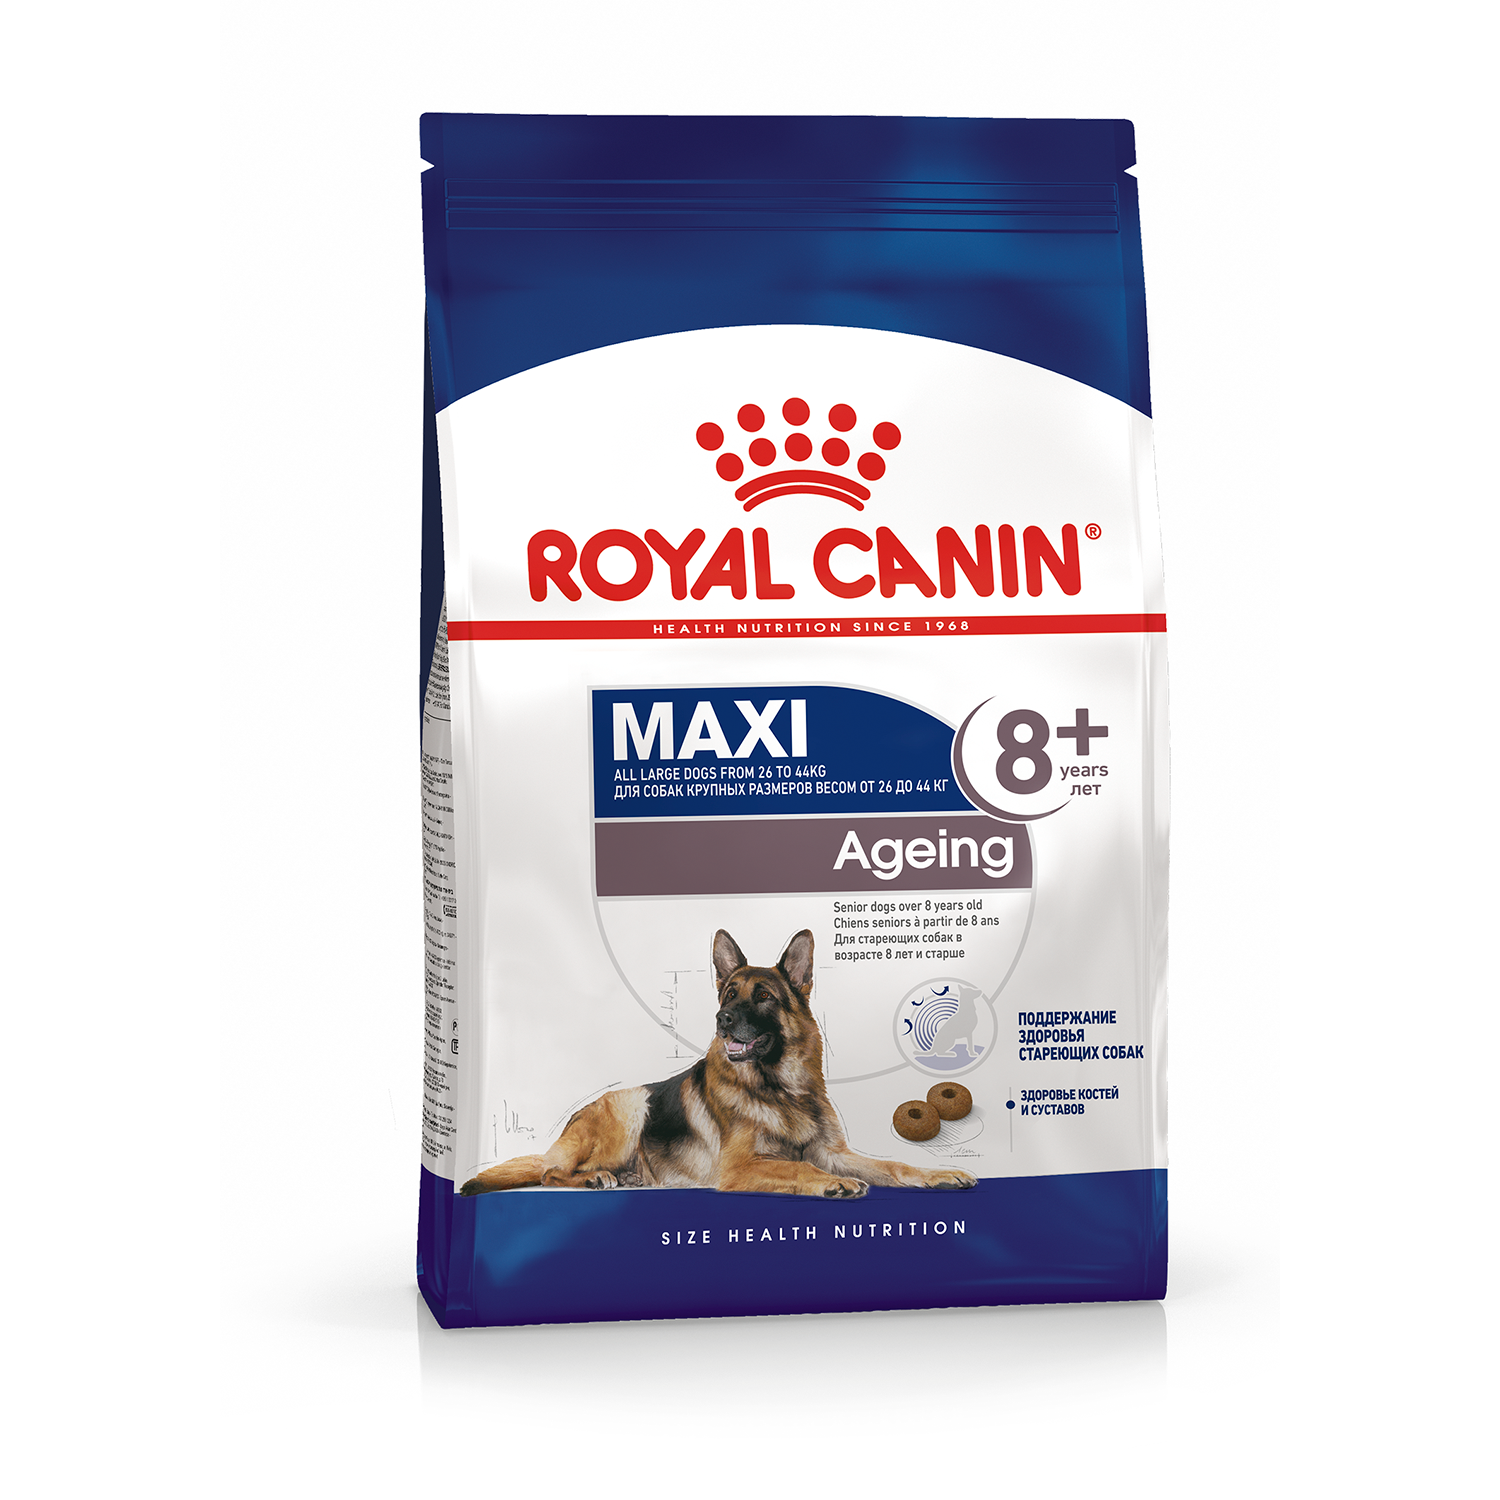 Купить сухой корм для собак Royal Canin Maxi Ageing 8+, для пожилых, крупных пород 15 кг, цены на Мегамаркет | Артикул: 100024143670